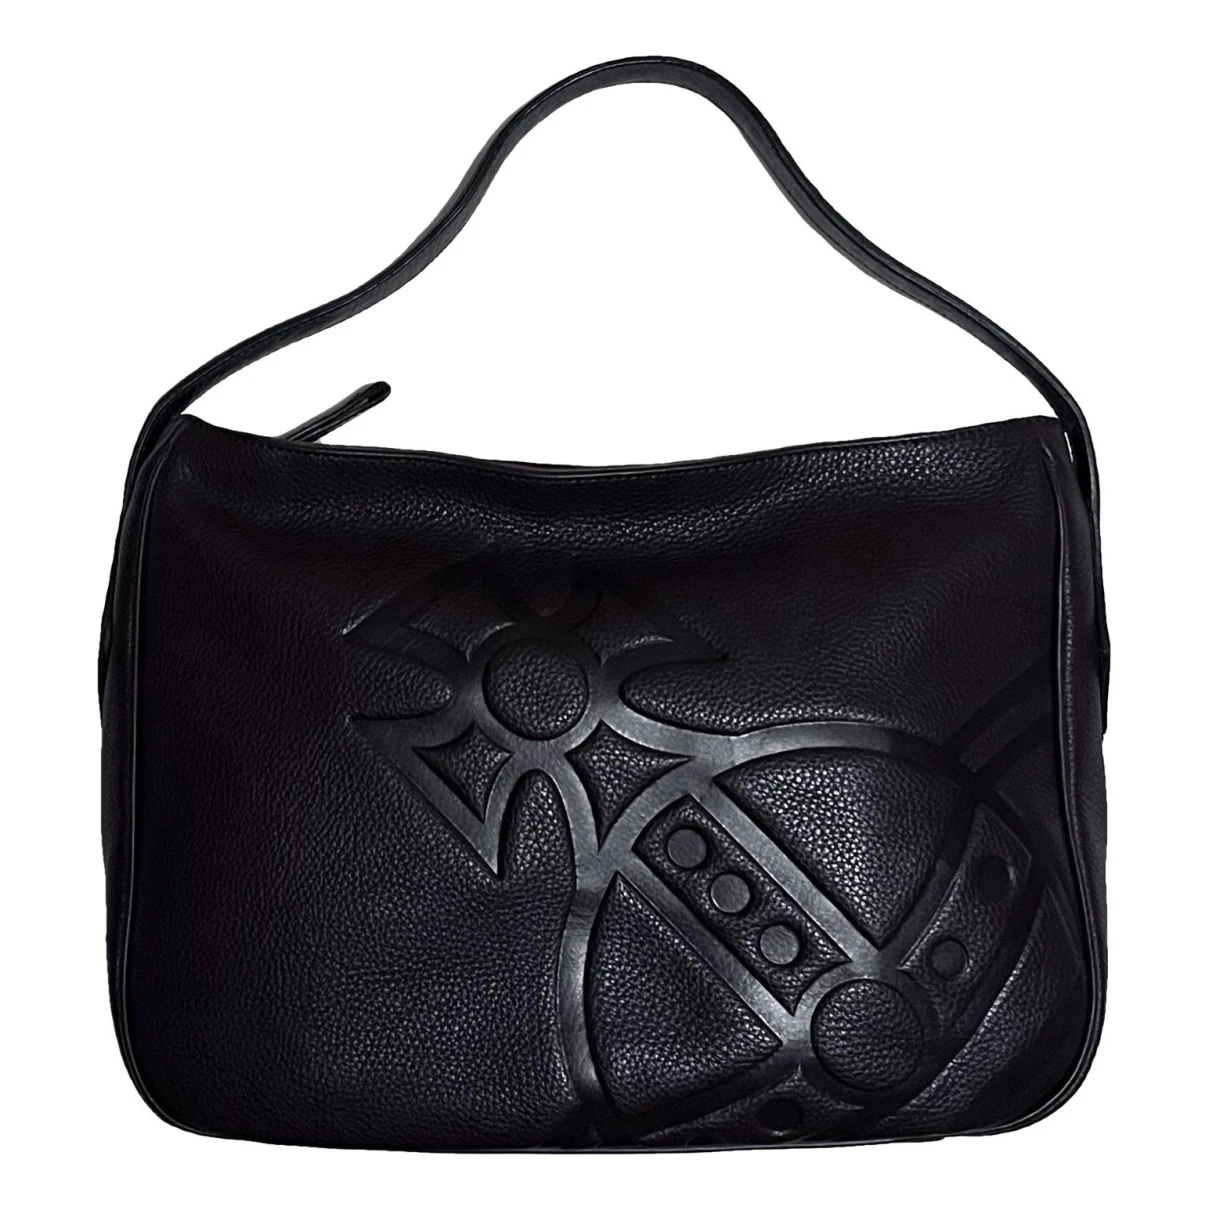 Pre-owned Vivienne Westwood Leather Handbag In Brown